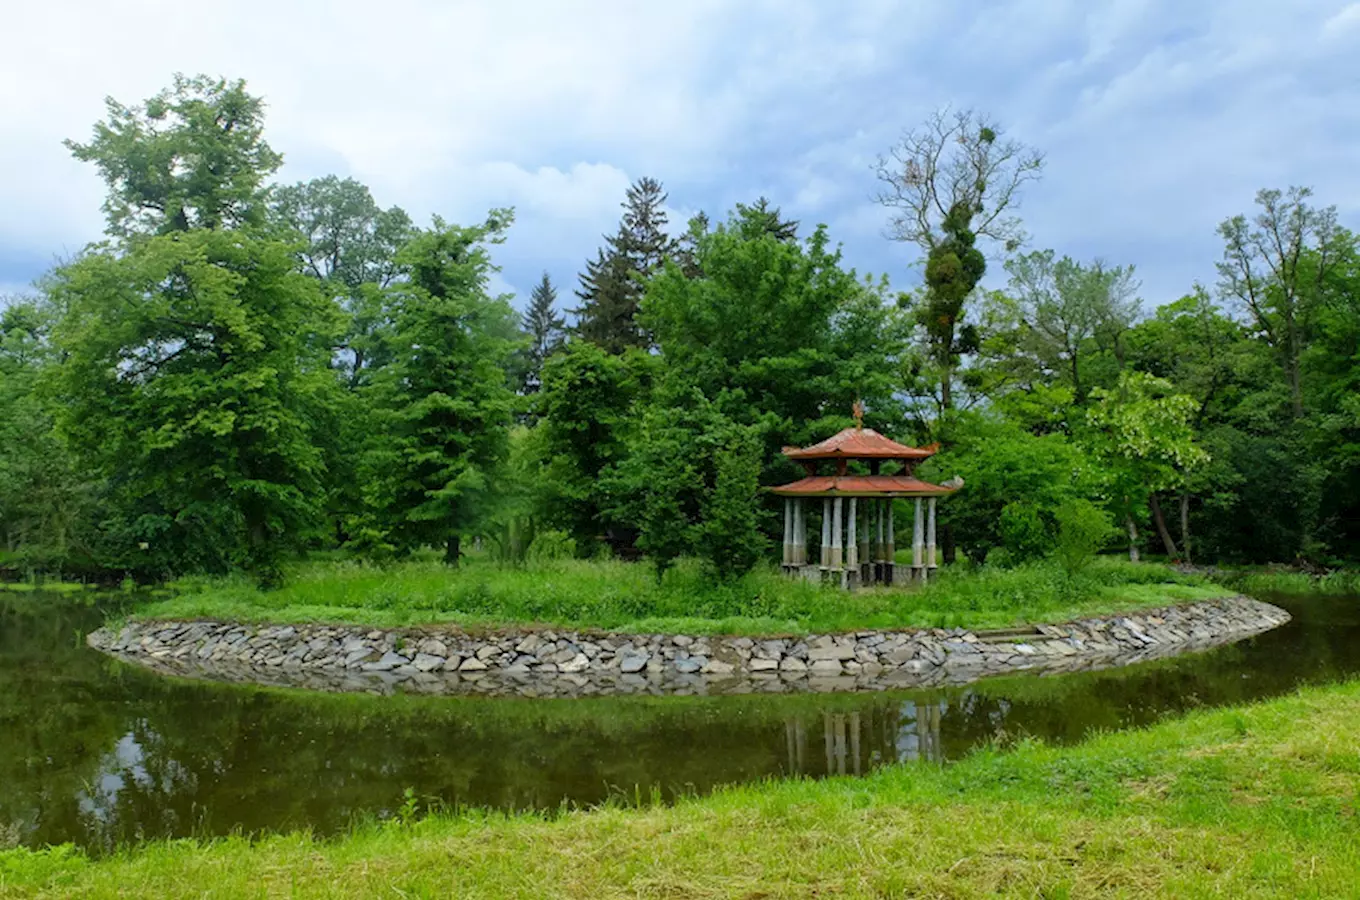 Čínský pavilon v Podzámecké zahradě v Kroměříži